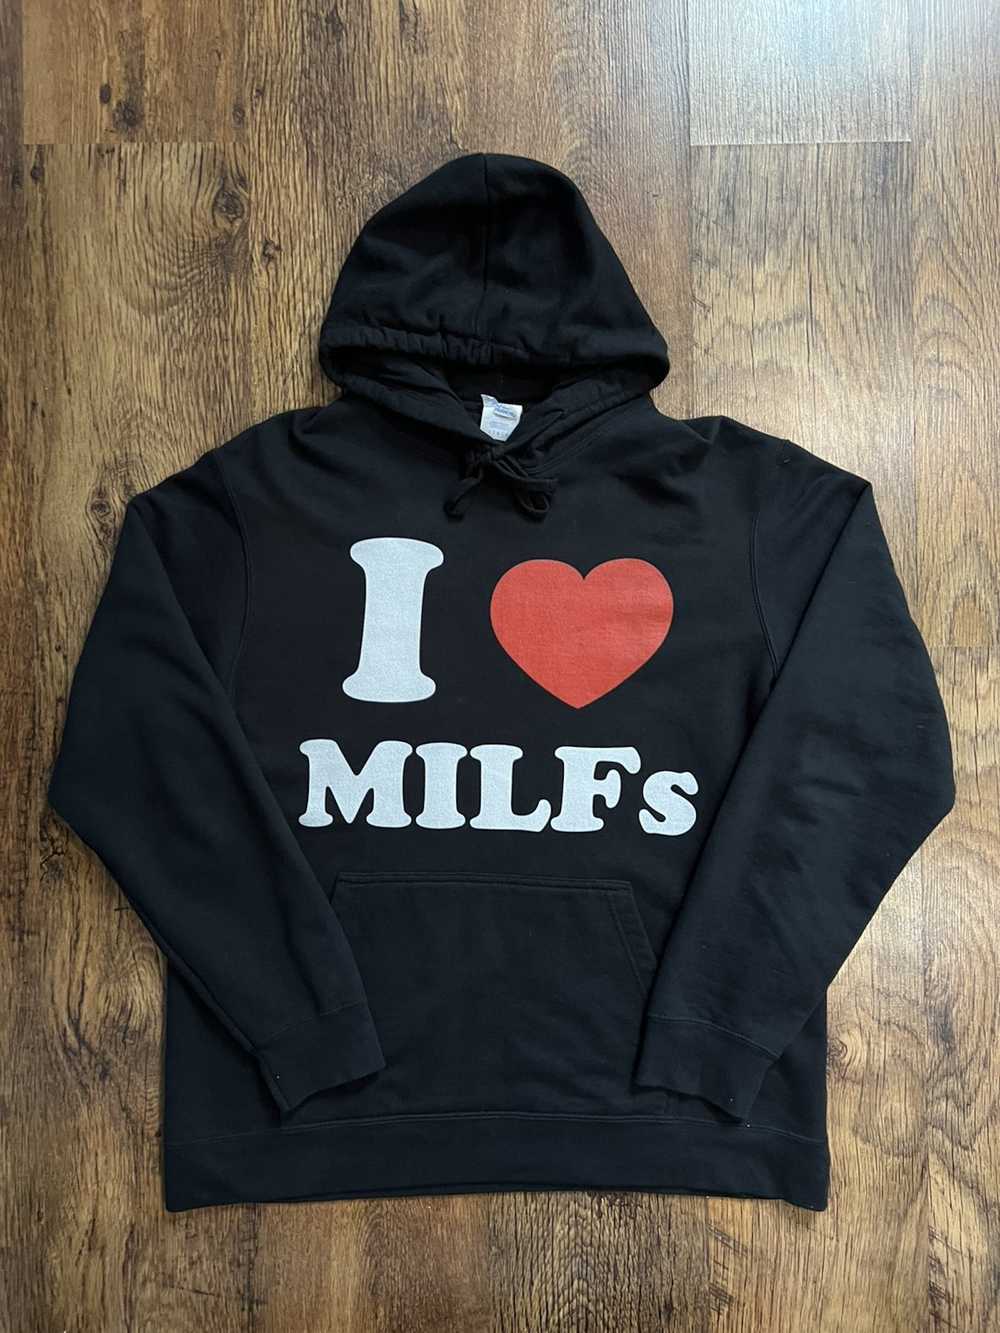 Made In Usa × Vintage I love milfs hoodie sweatsh… - image 5